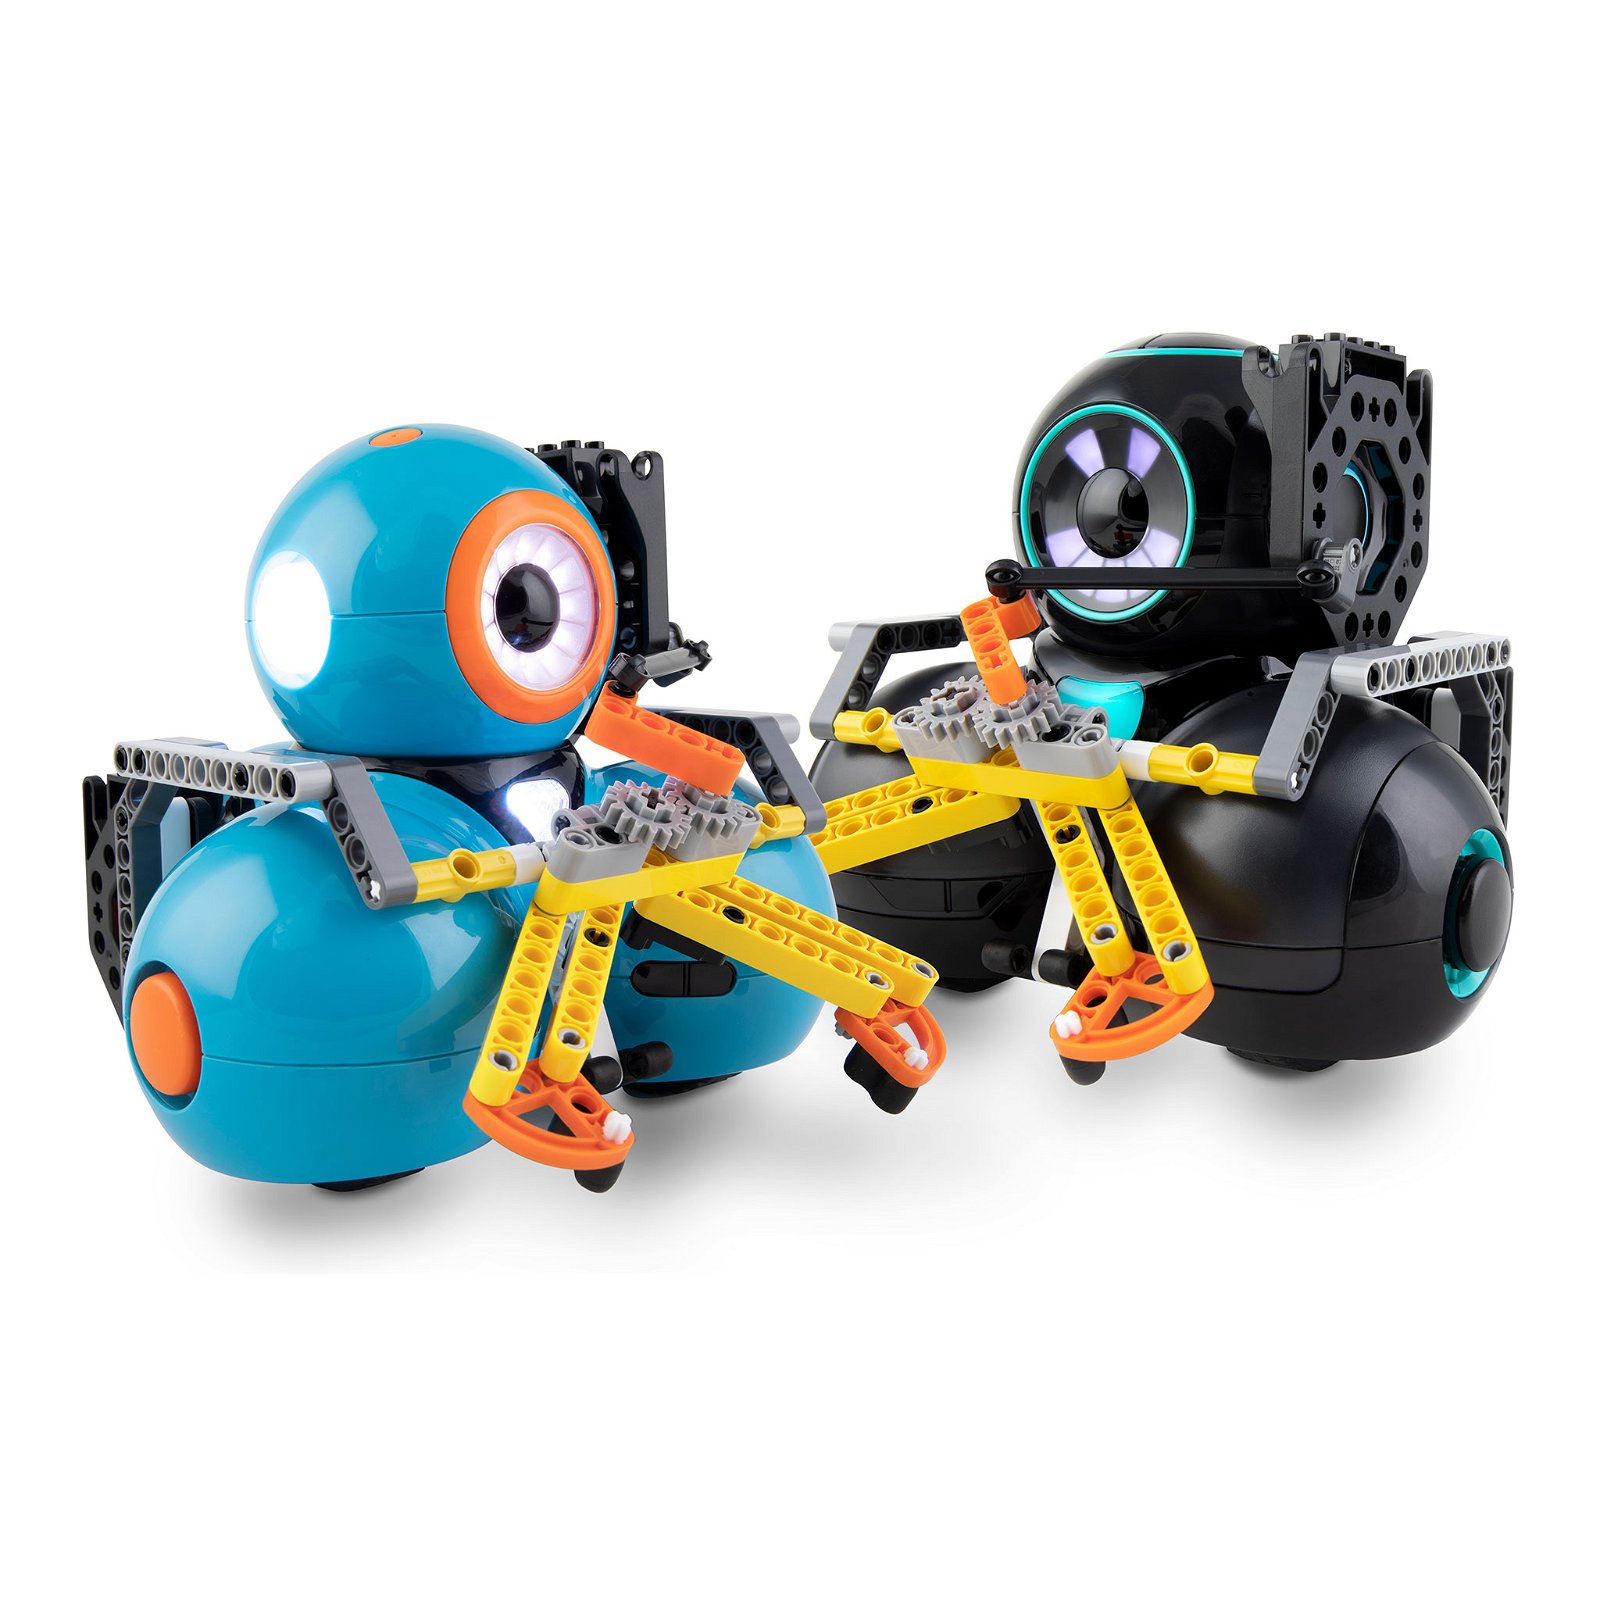 Introducing Dash & Dot Robots